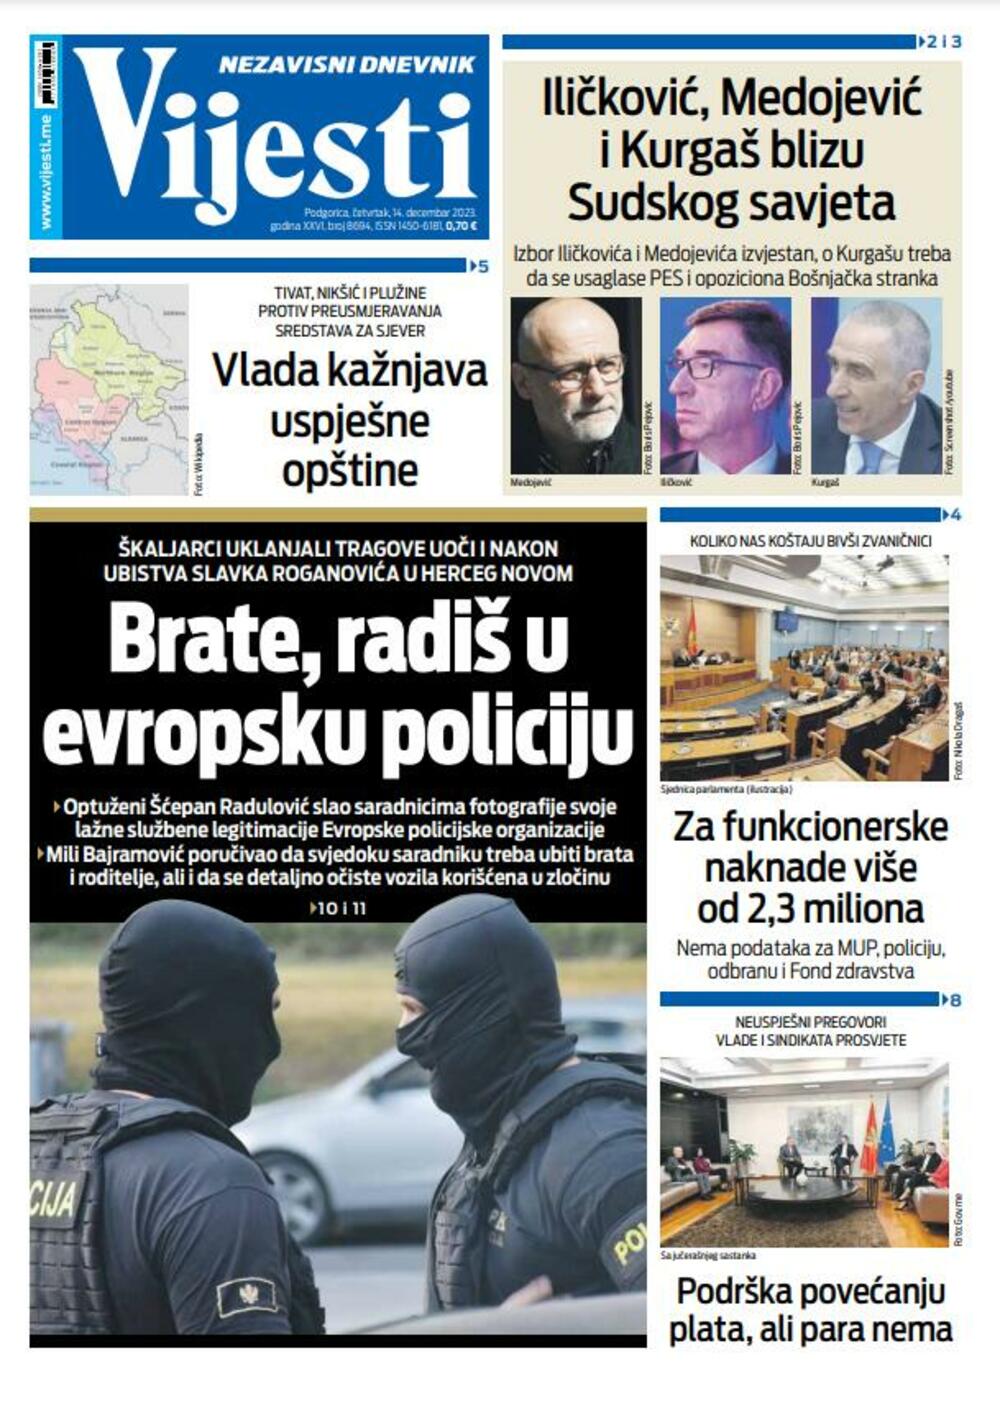 Naslovna strana "Vijesti" za 14. decembar 2023., Foto: Vijesti